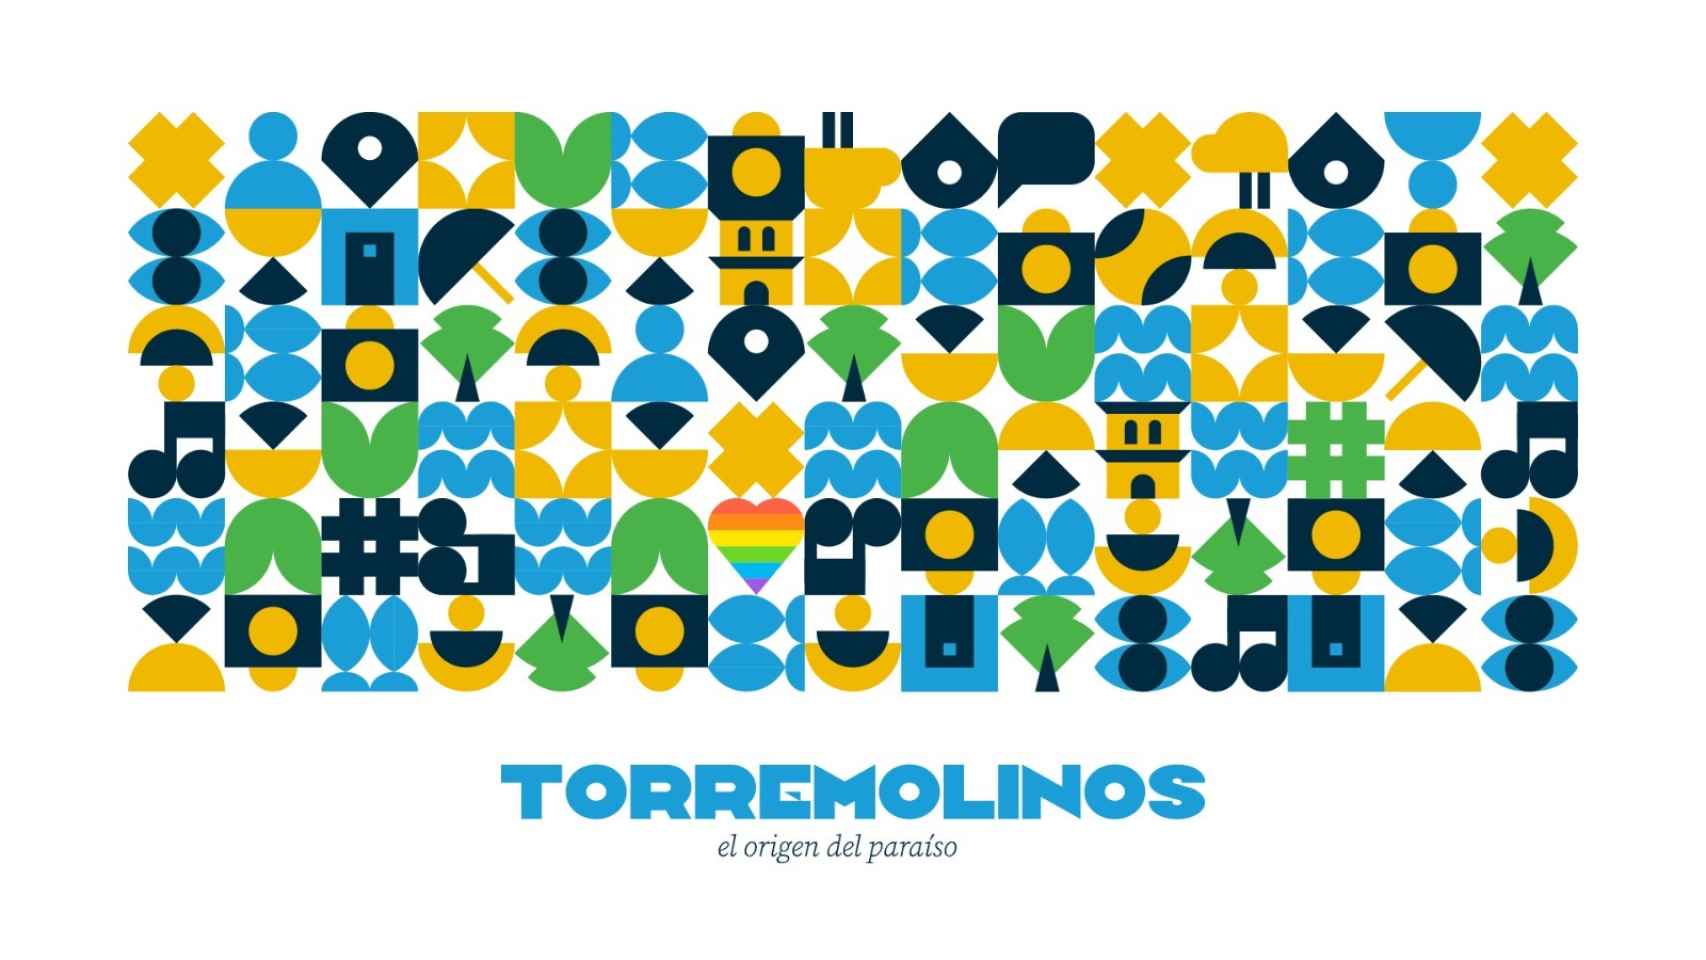 El origen del paraíso, campaña de Torremolinos.